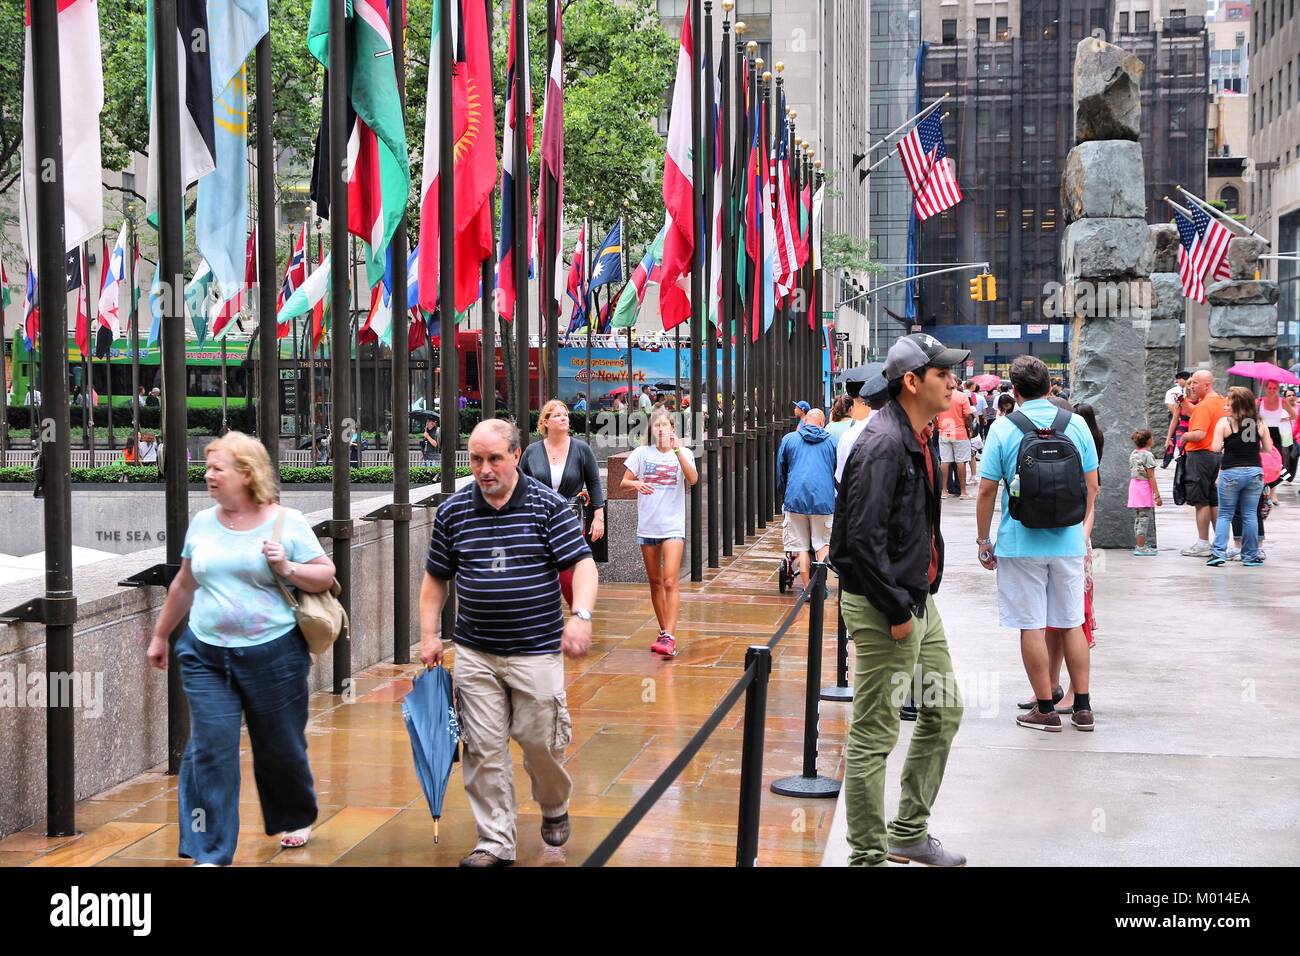 NEW YORK - 1 JULI: Menschen besuchen Rockefeller Center am 1. Juli 2013 in New York. Rockefeller Center ist eines der bekanntesten Wahrzeichen in den Vereinigten S Stockfoto